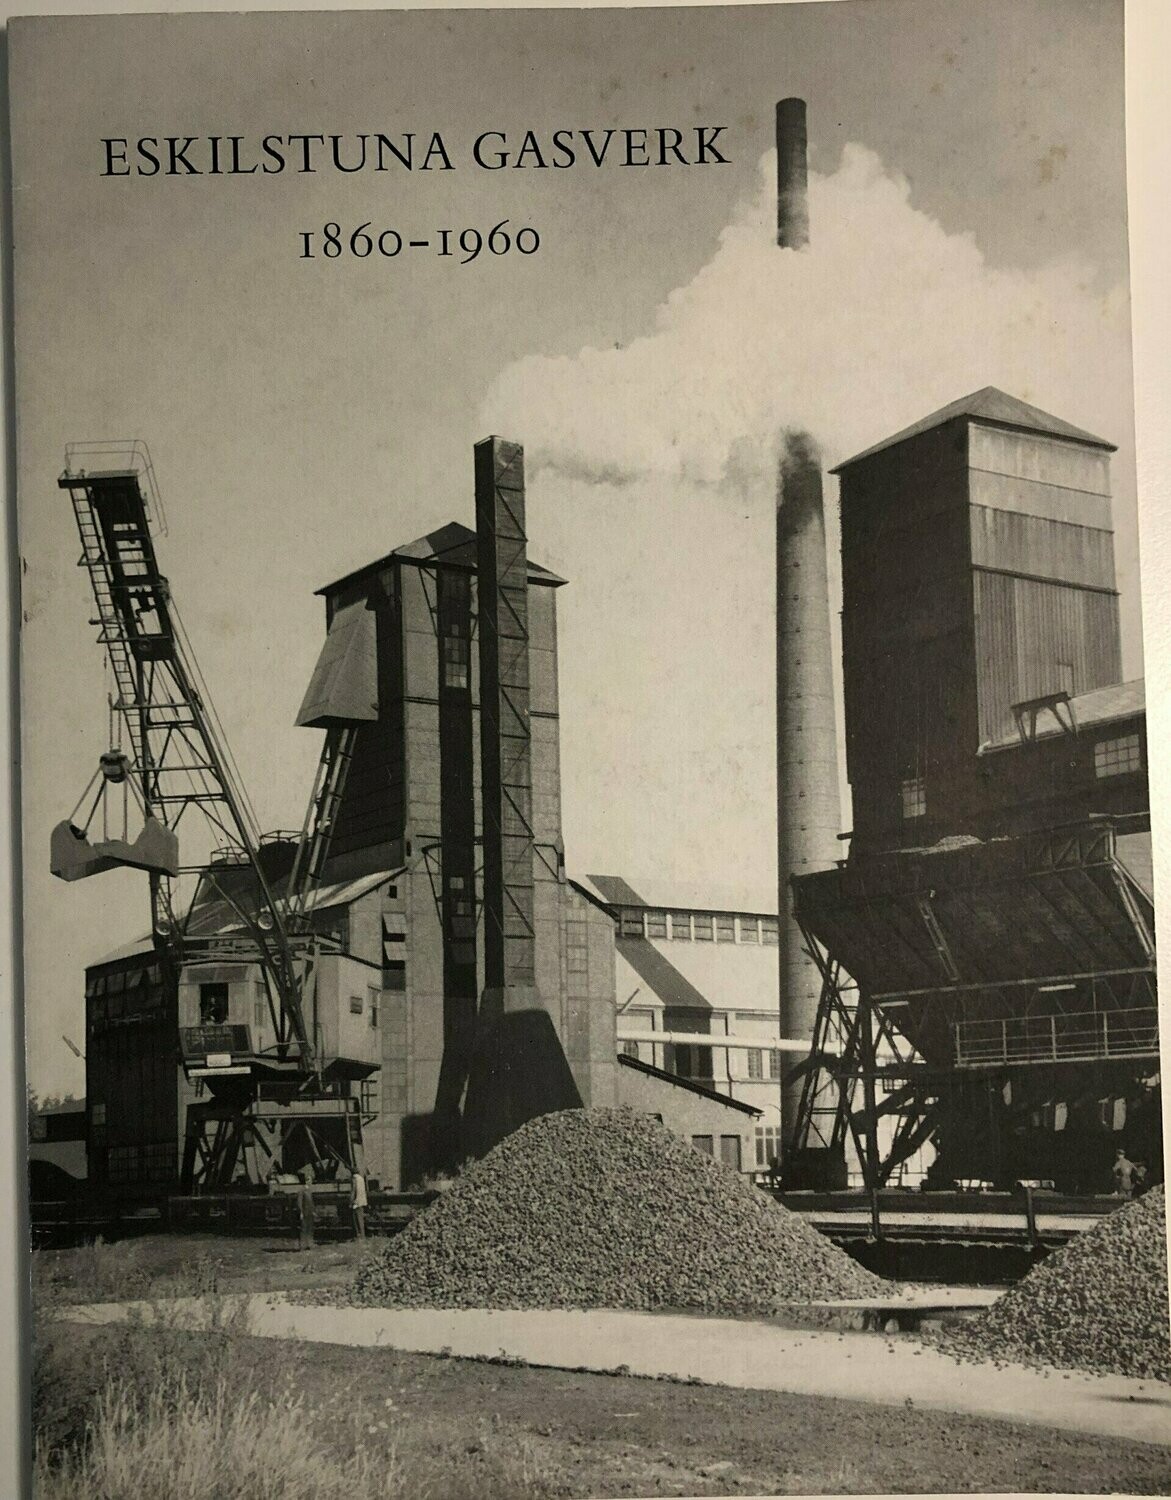 Eskilstuna gasverk 1860-1960